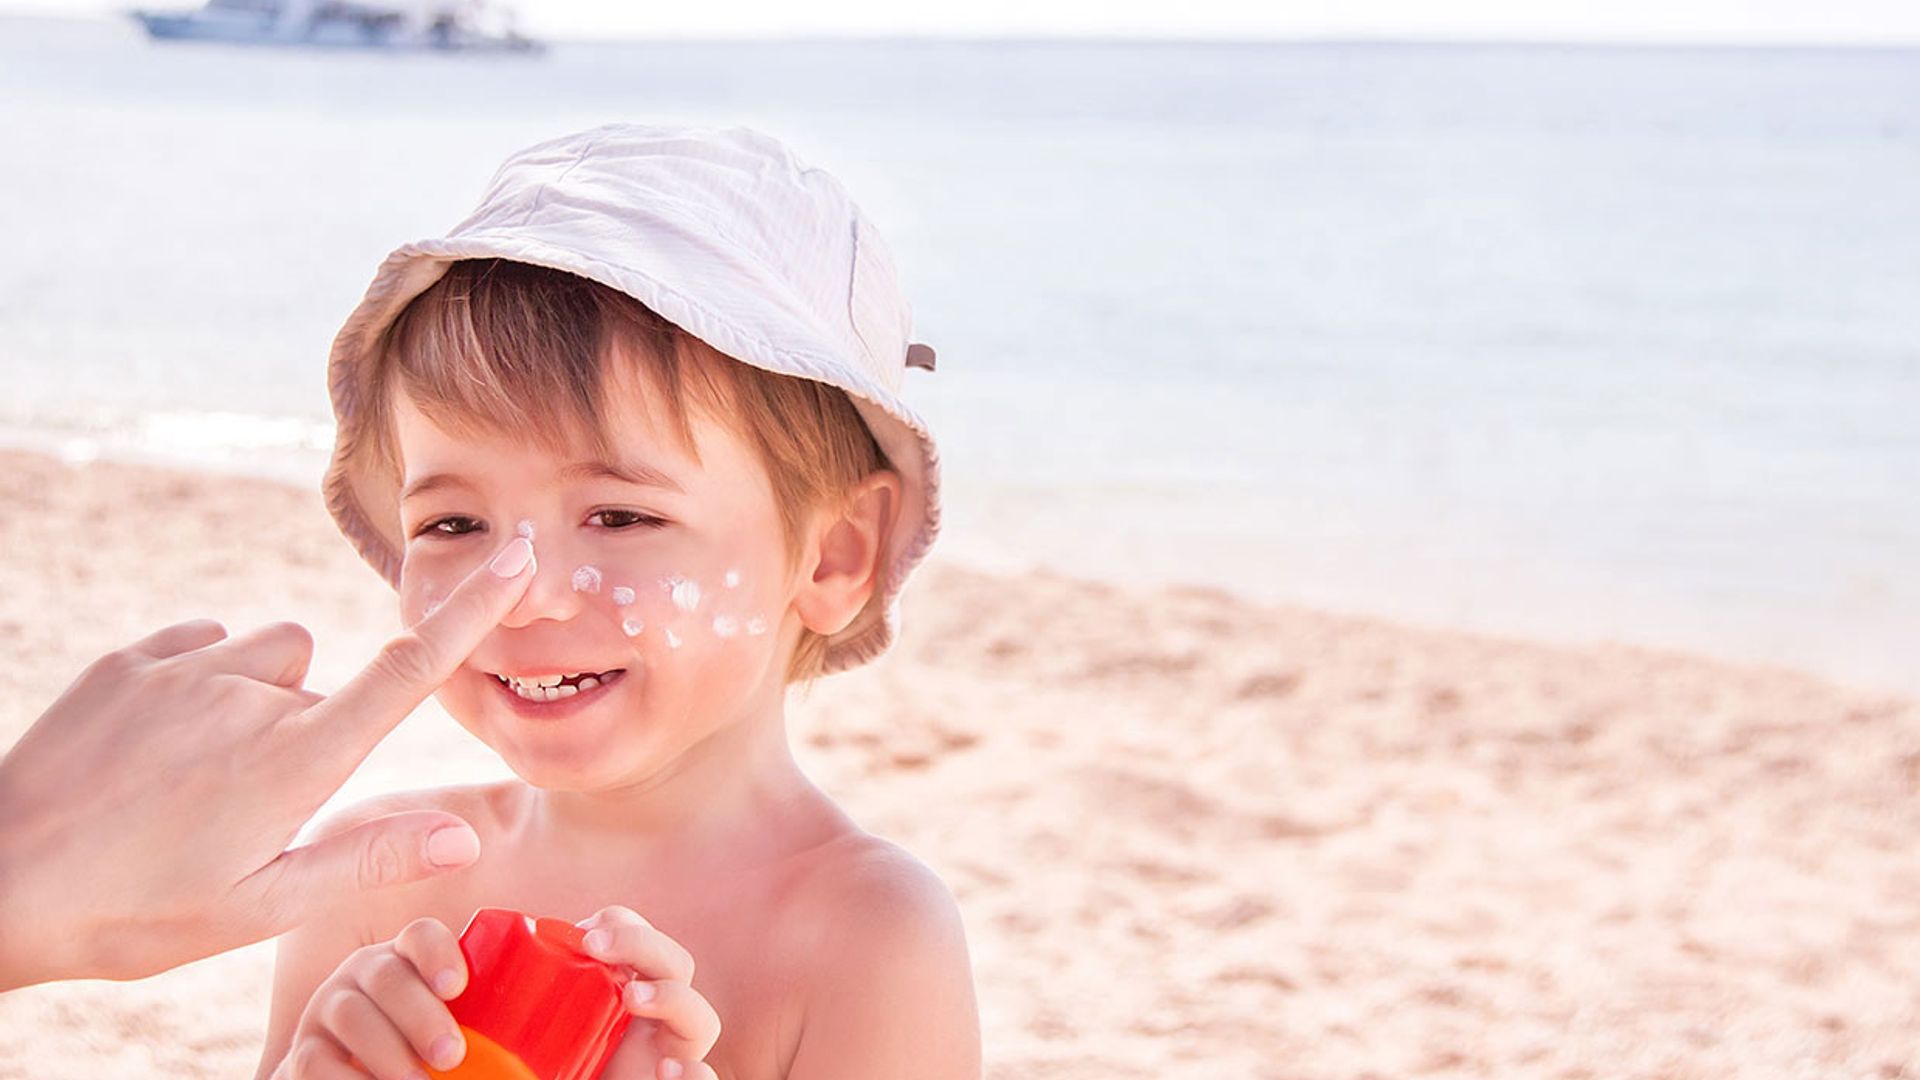 Best sunscreen for babies & kids 2021